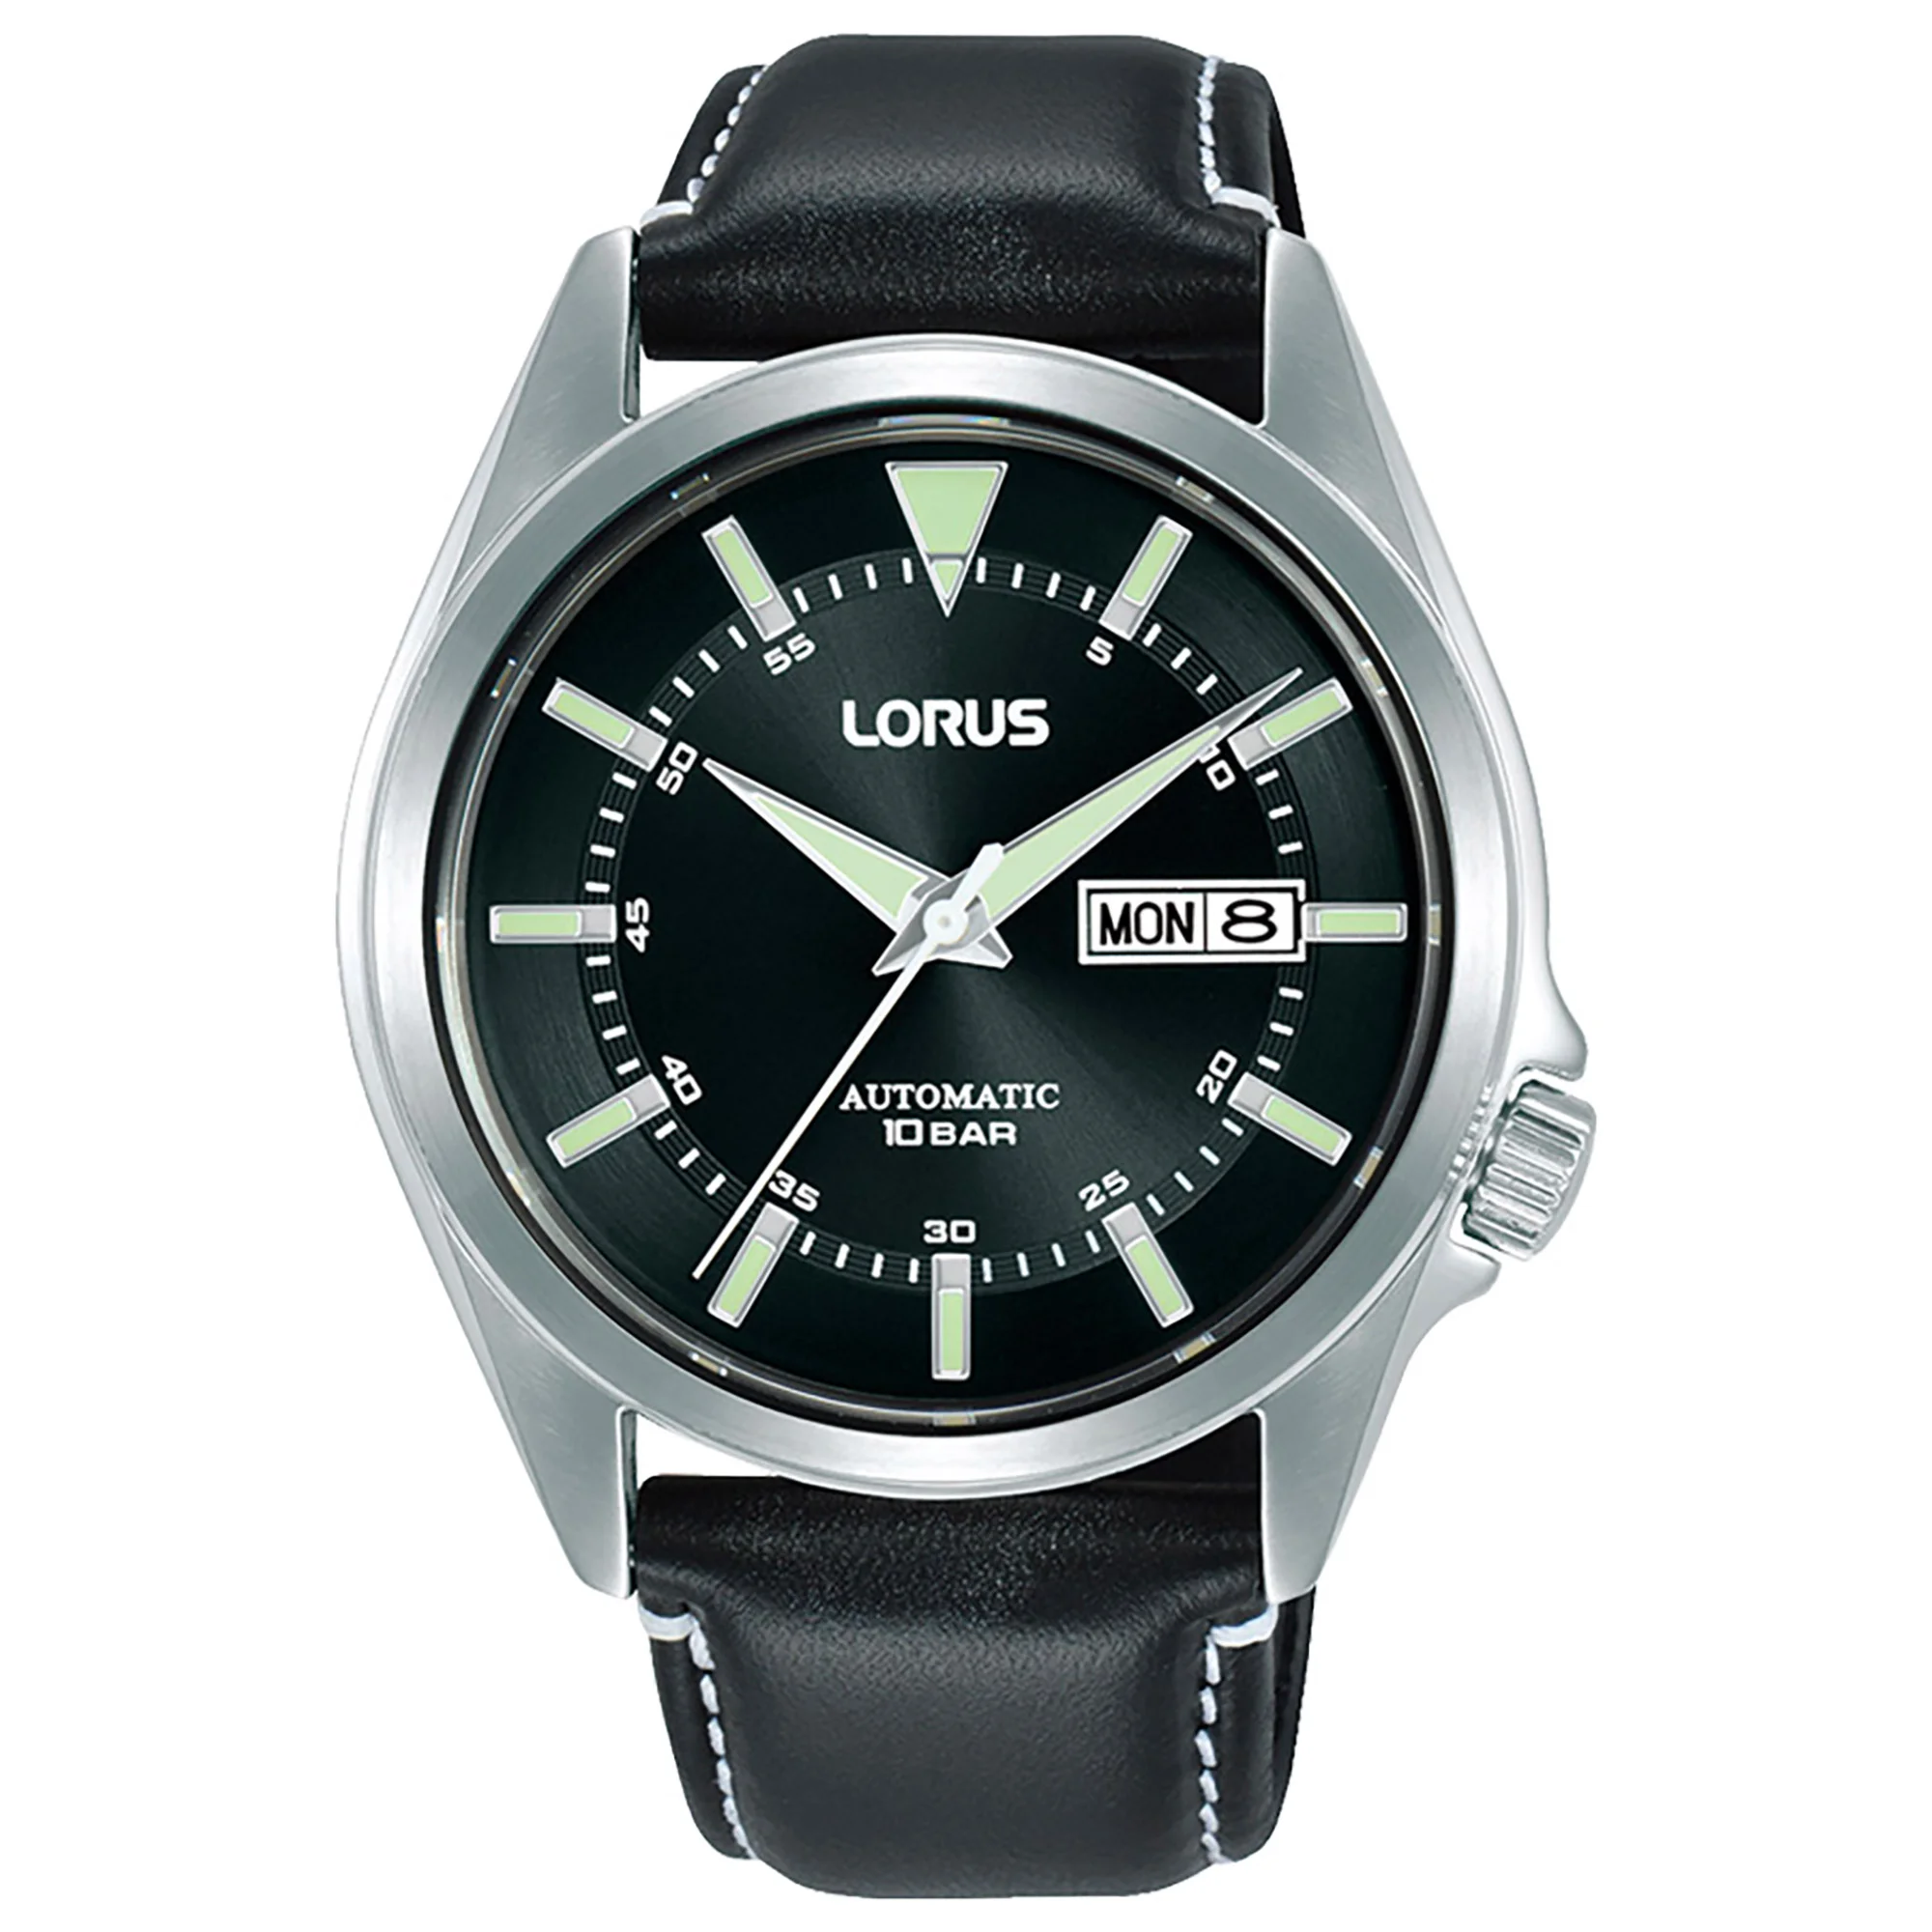 Watch Lorus rl423bx9